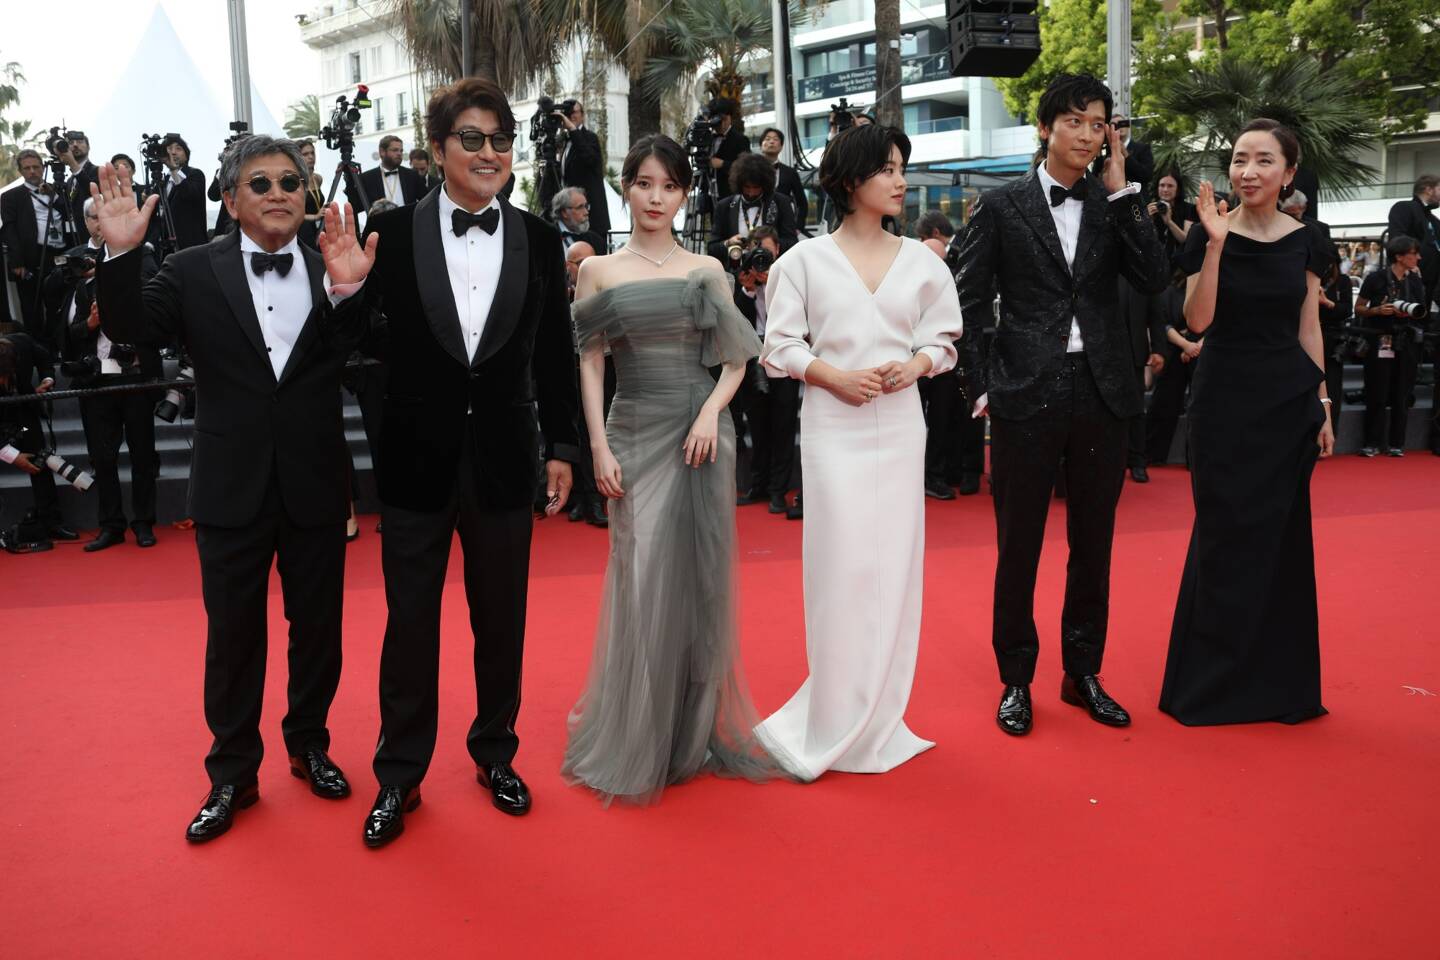 L'équipe du film "Les bonnes étoiles" au 75e Festival de Cannes, jeudi 26 mai.